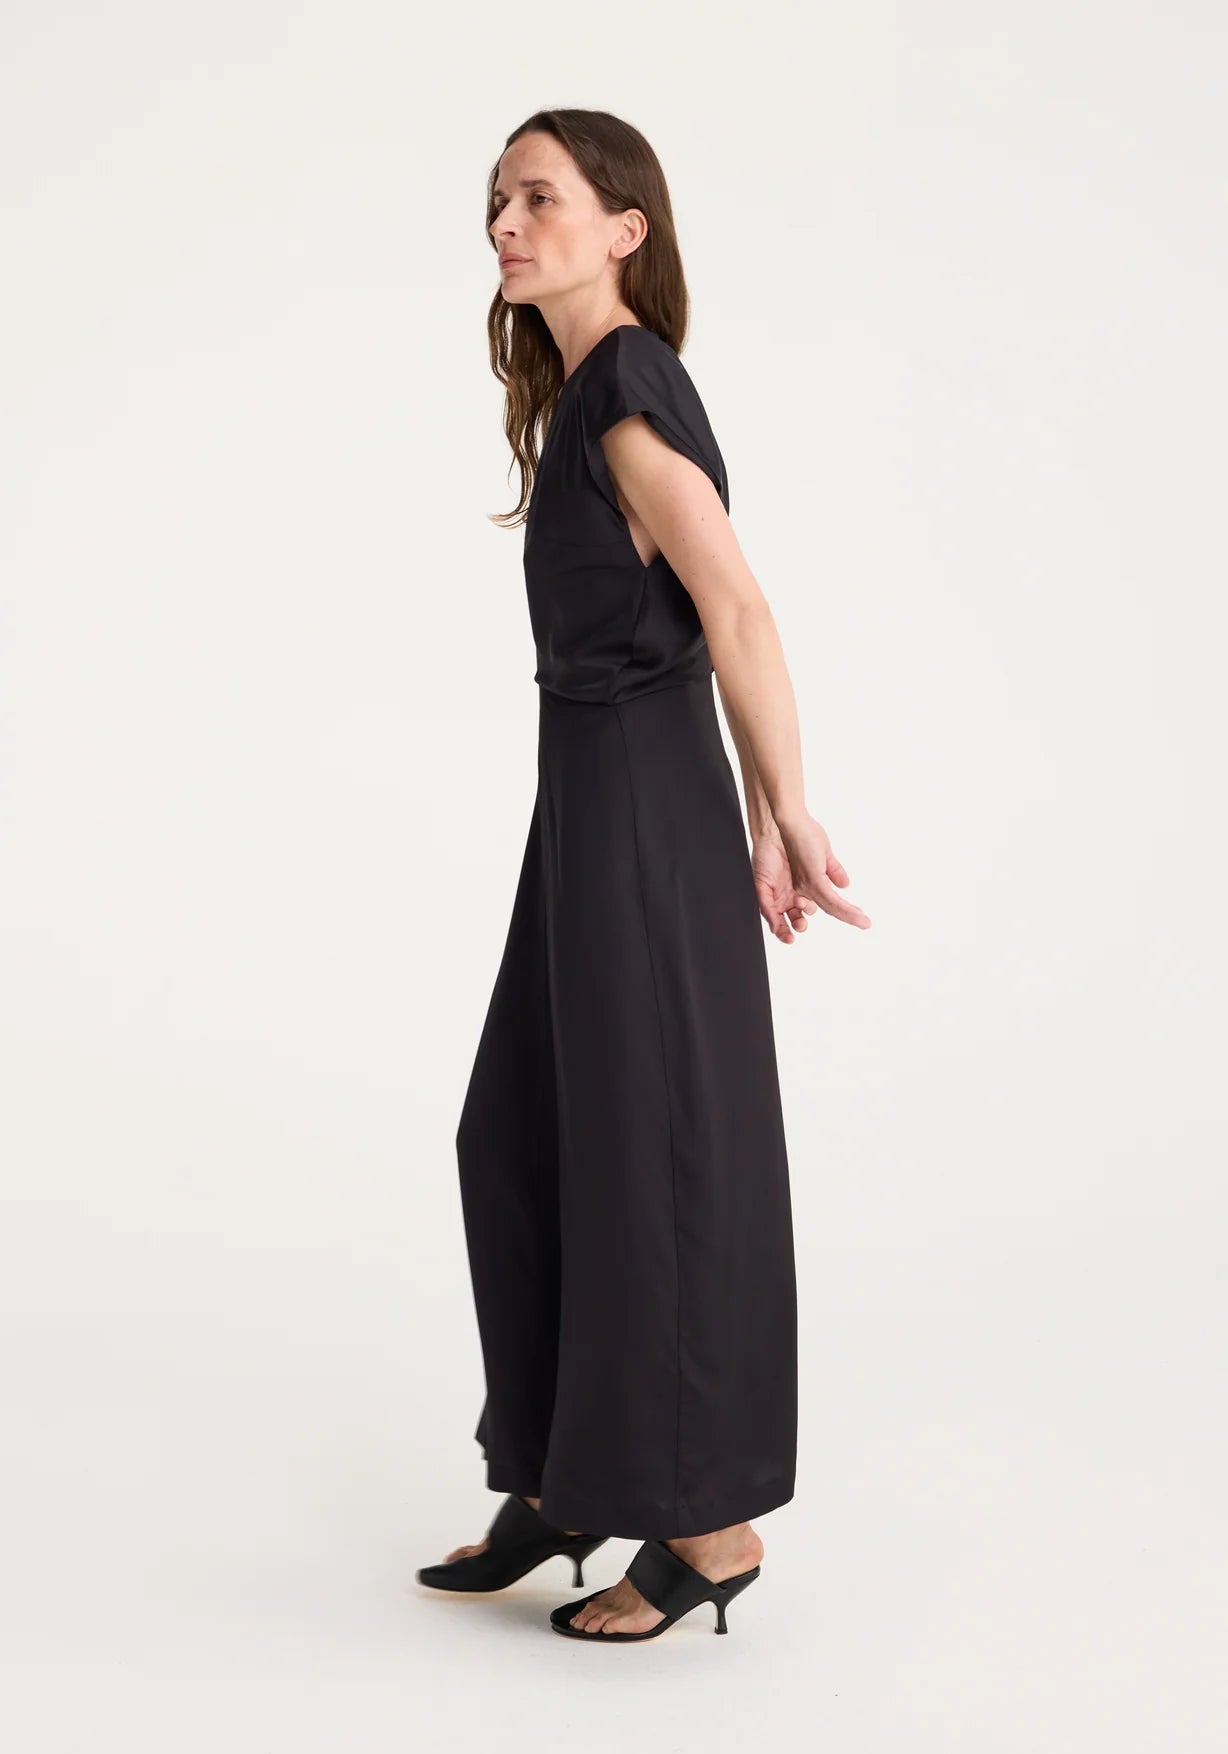 V-neck Draped Short Sleeve Dress in Black